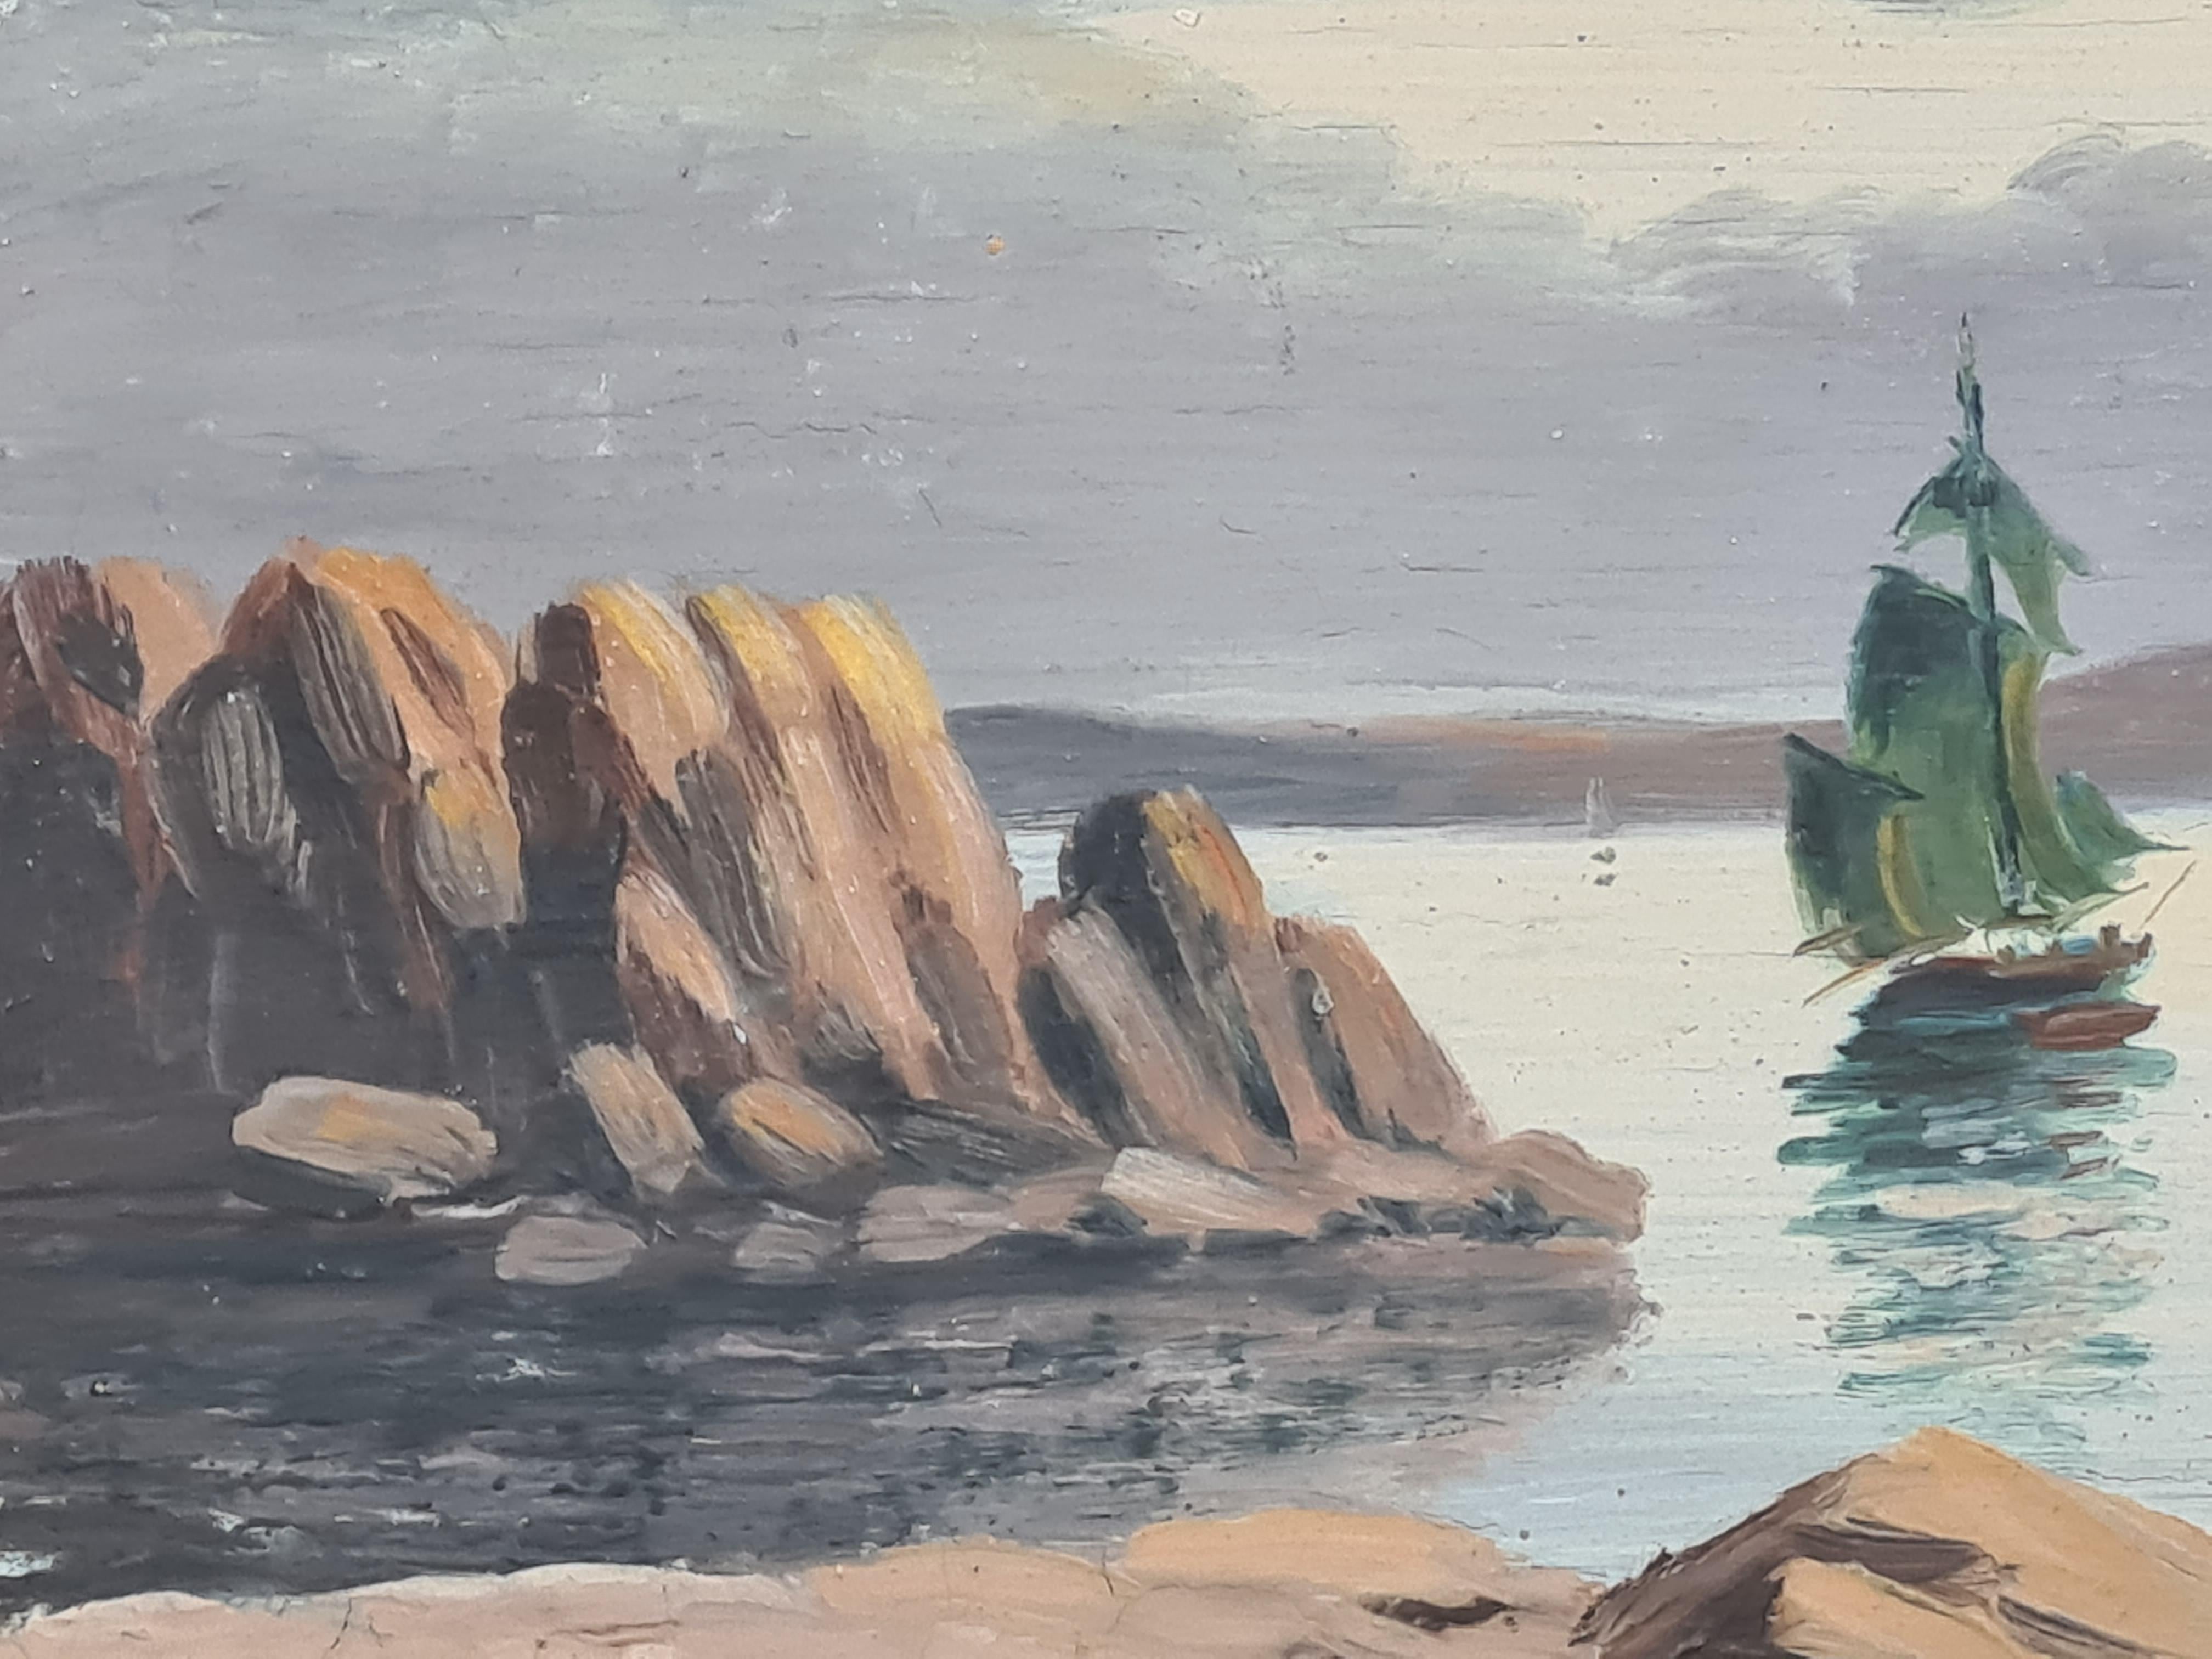 Une huile sur panneau représentant un paysage marin idyllique de Boggio. Le tableau est signé en bas à droite.

Un paysage marin idéalisé, des bateaux à voile sur une mer tranquille s'éloignant d'un affleurement rocheux, le tout sous un ciel